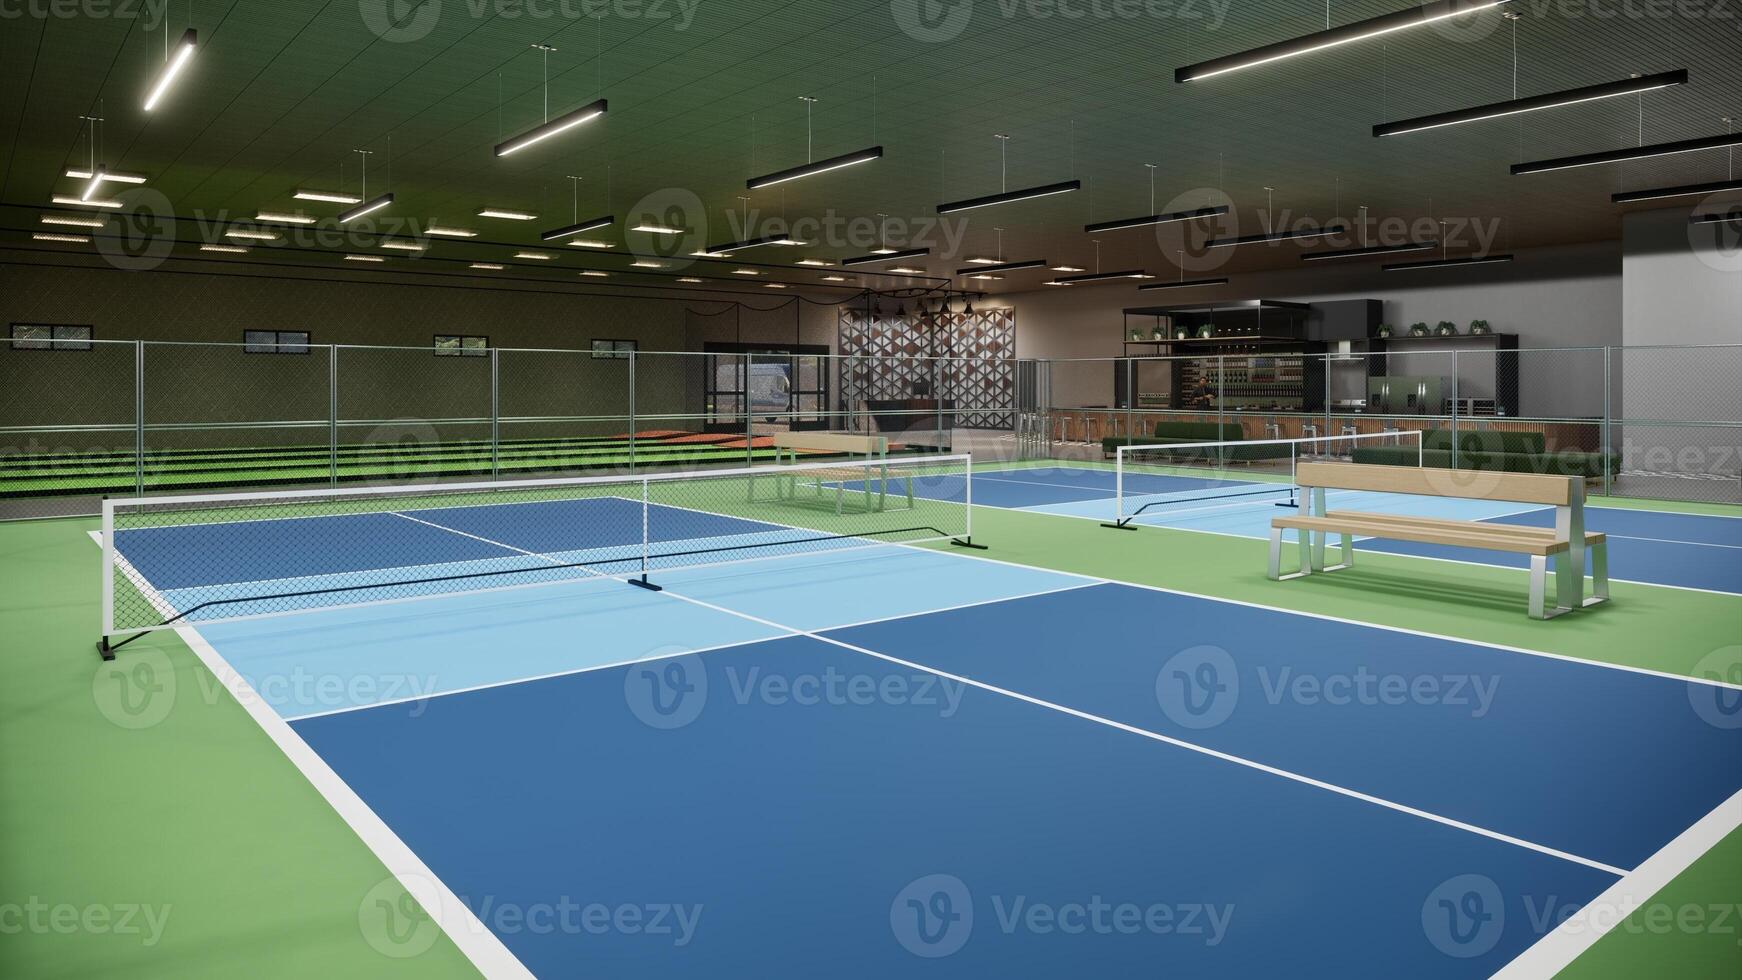 binnen- augurk rechtbank met blauw en groen kleur 3d geven illustratie sport complex foto